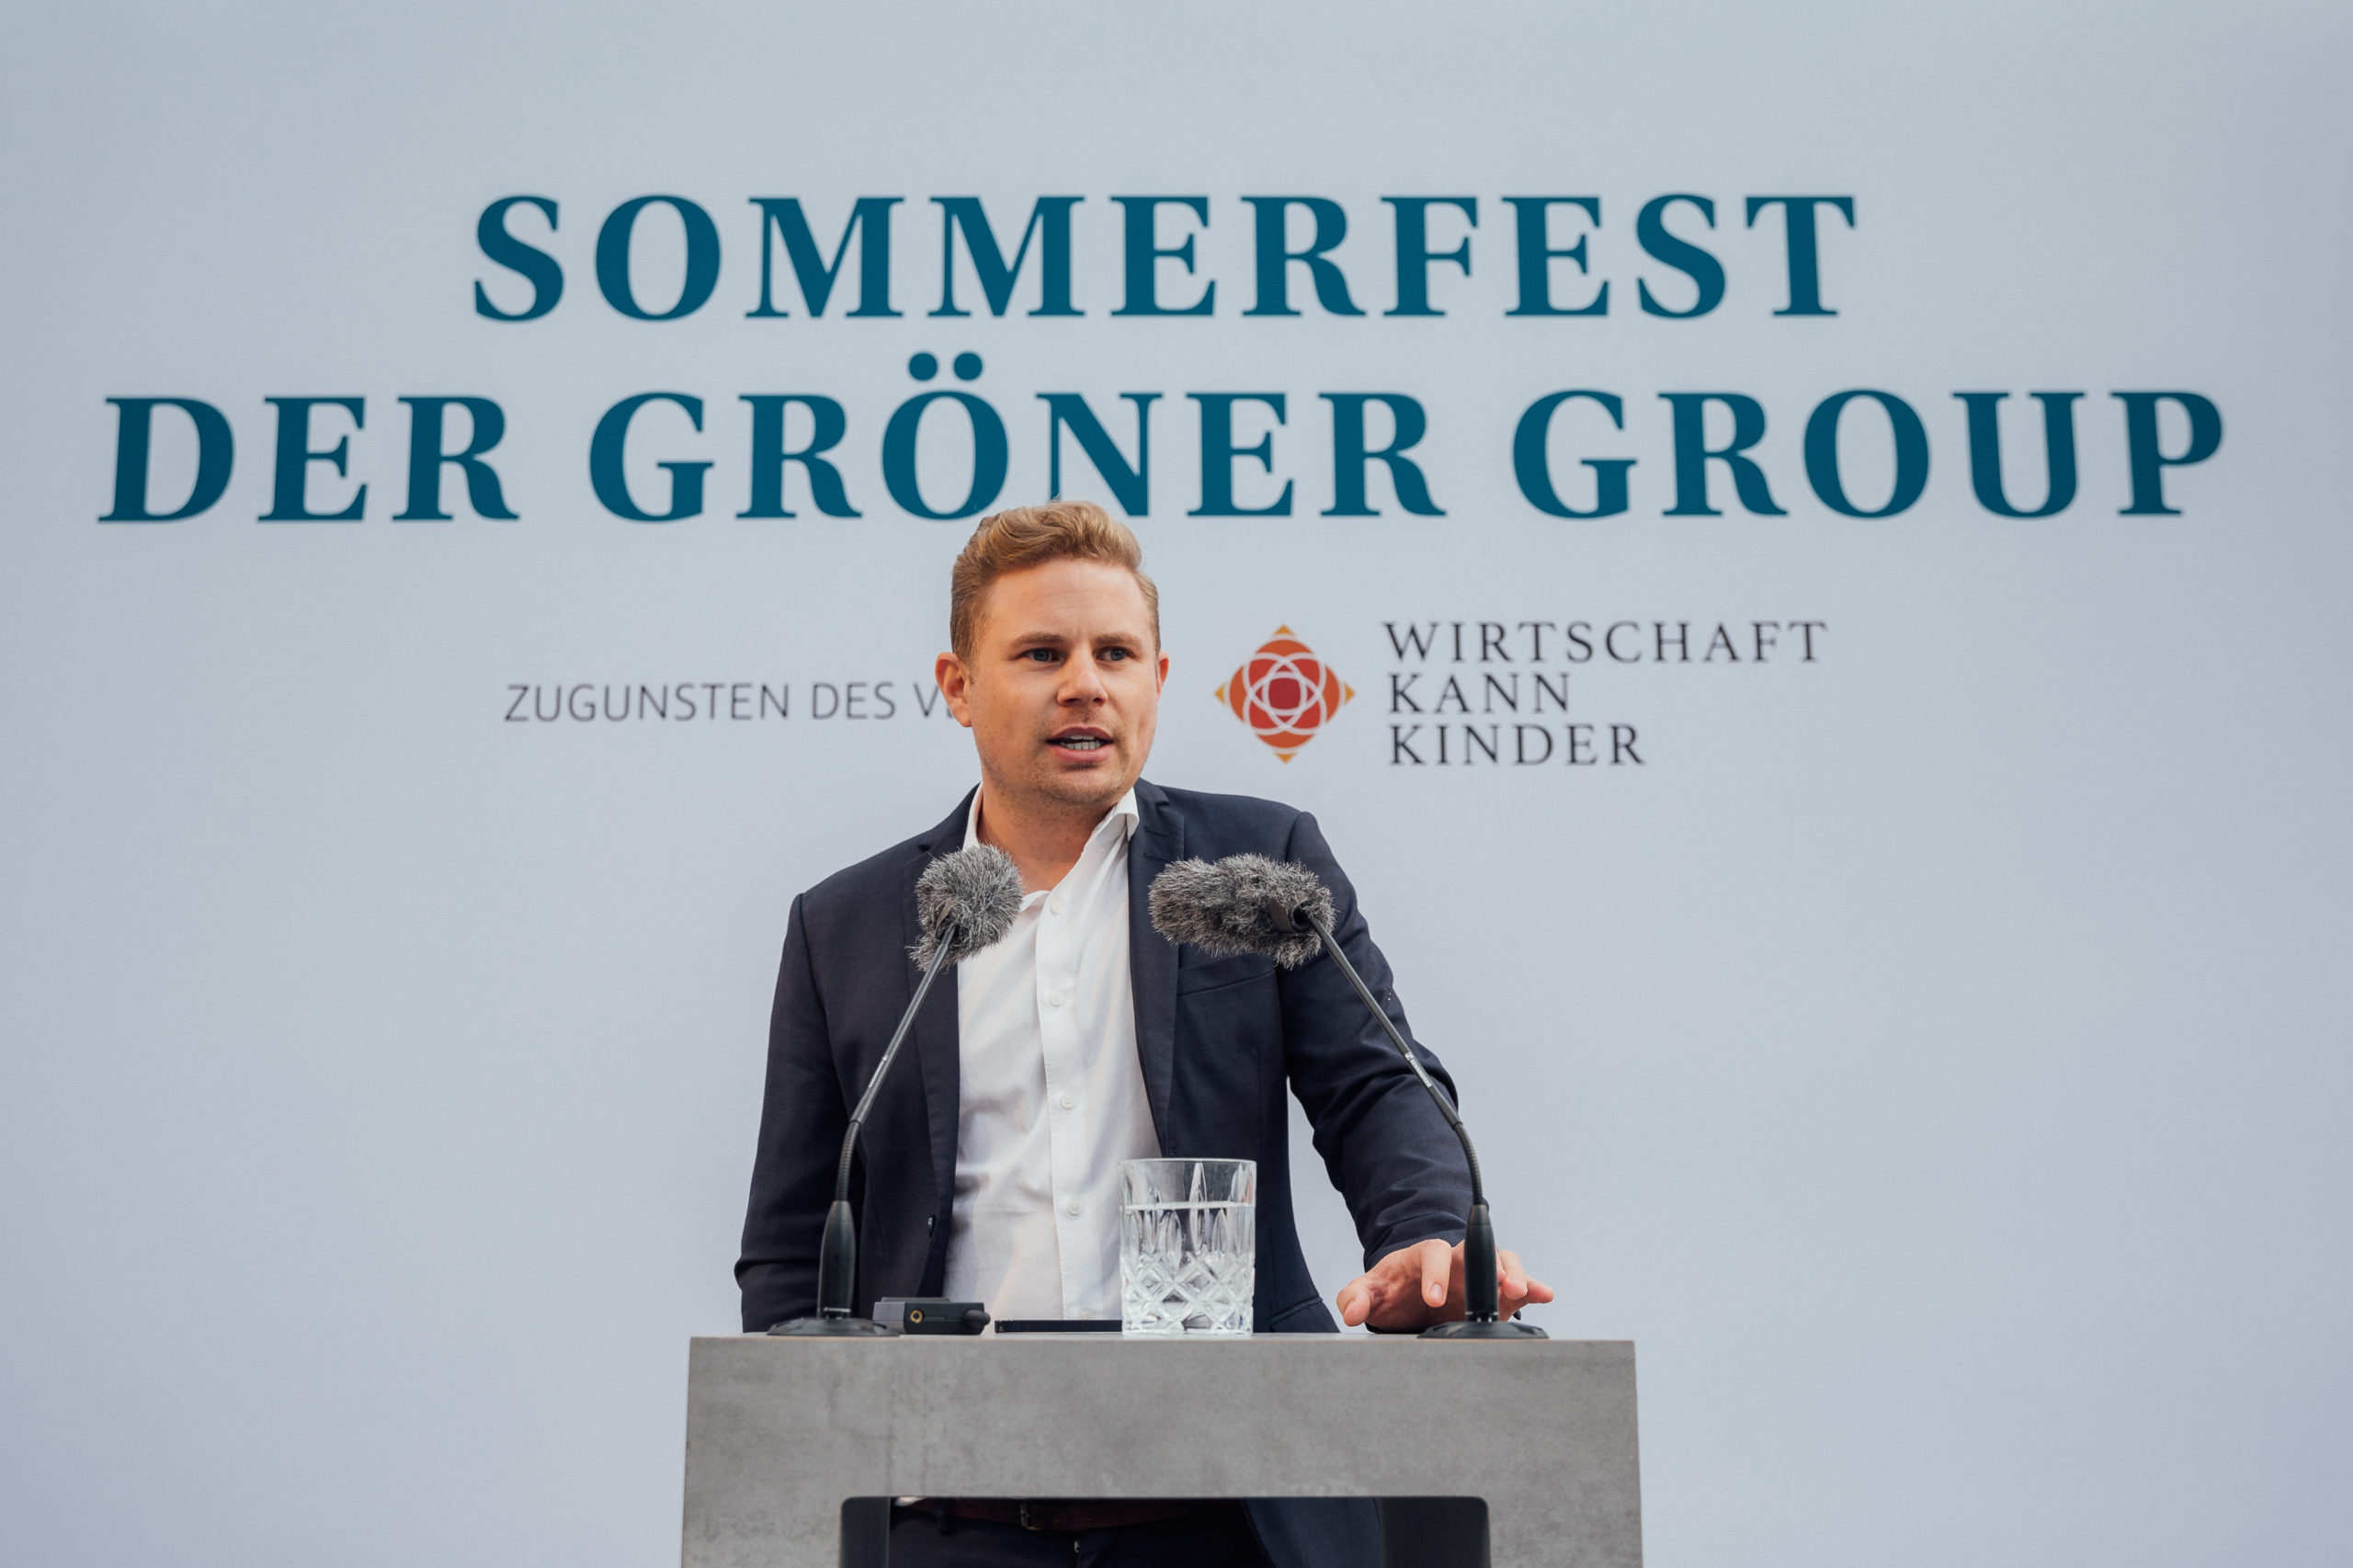 Gerhard Schröder beim Sommerfest der Gröner Group zugunsten des Wirtschaft kann Kinder e. V.: 200.000 EUR für den Safe-Hub der Oliver Kahn Stiftung und AMANDLA